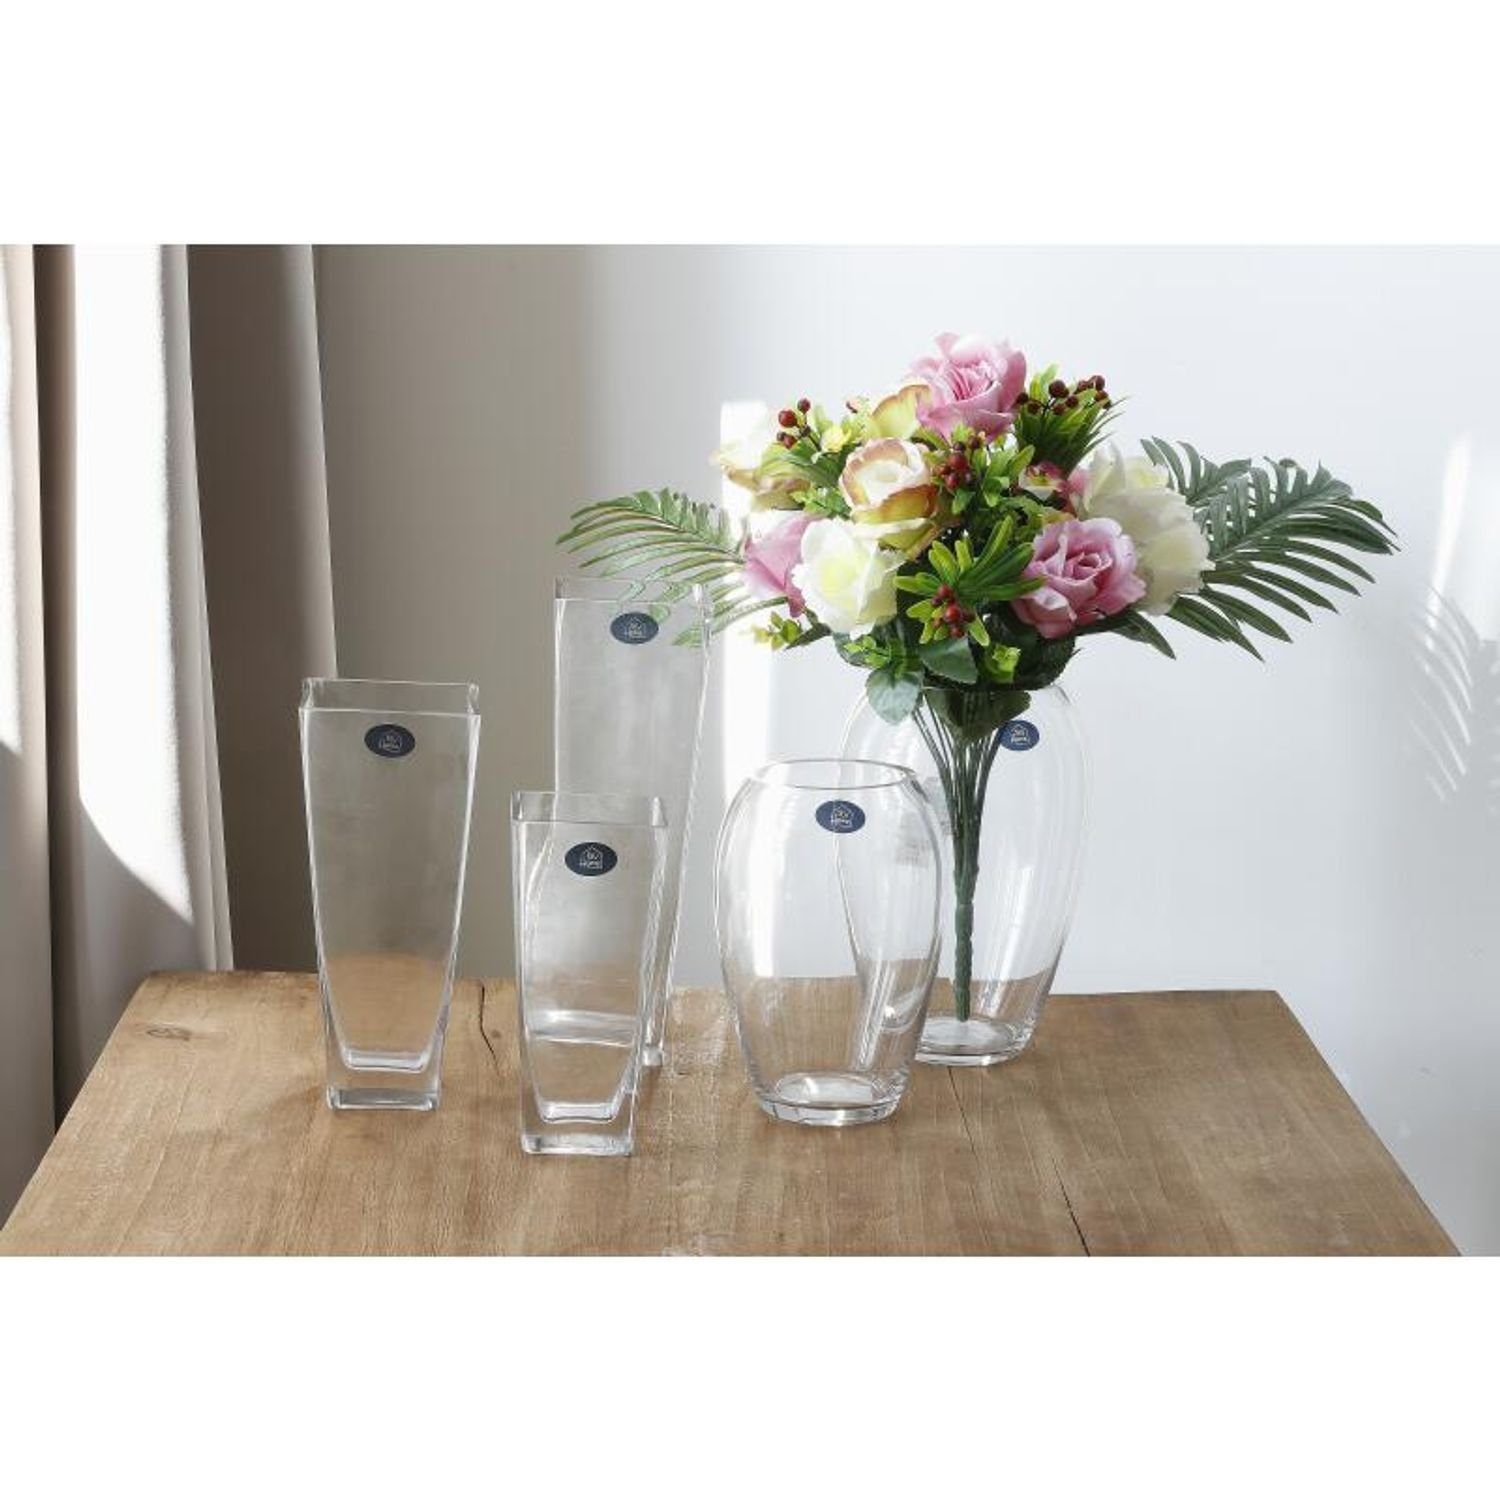 Blumenvase BURI Glas Blumen wohnen Haushalt Tischvase 6x eckig Glasvase Vase Dekorati